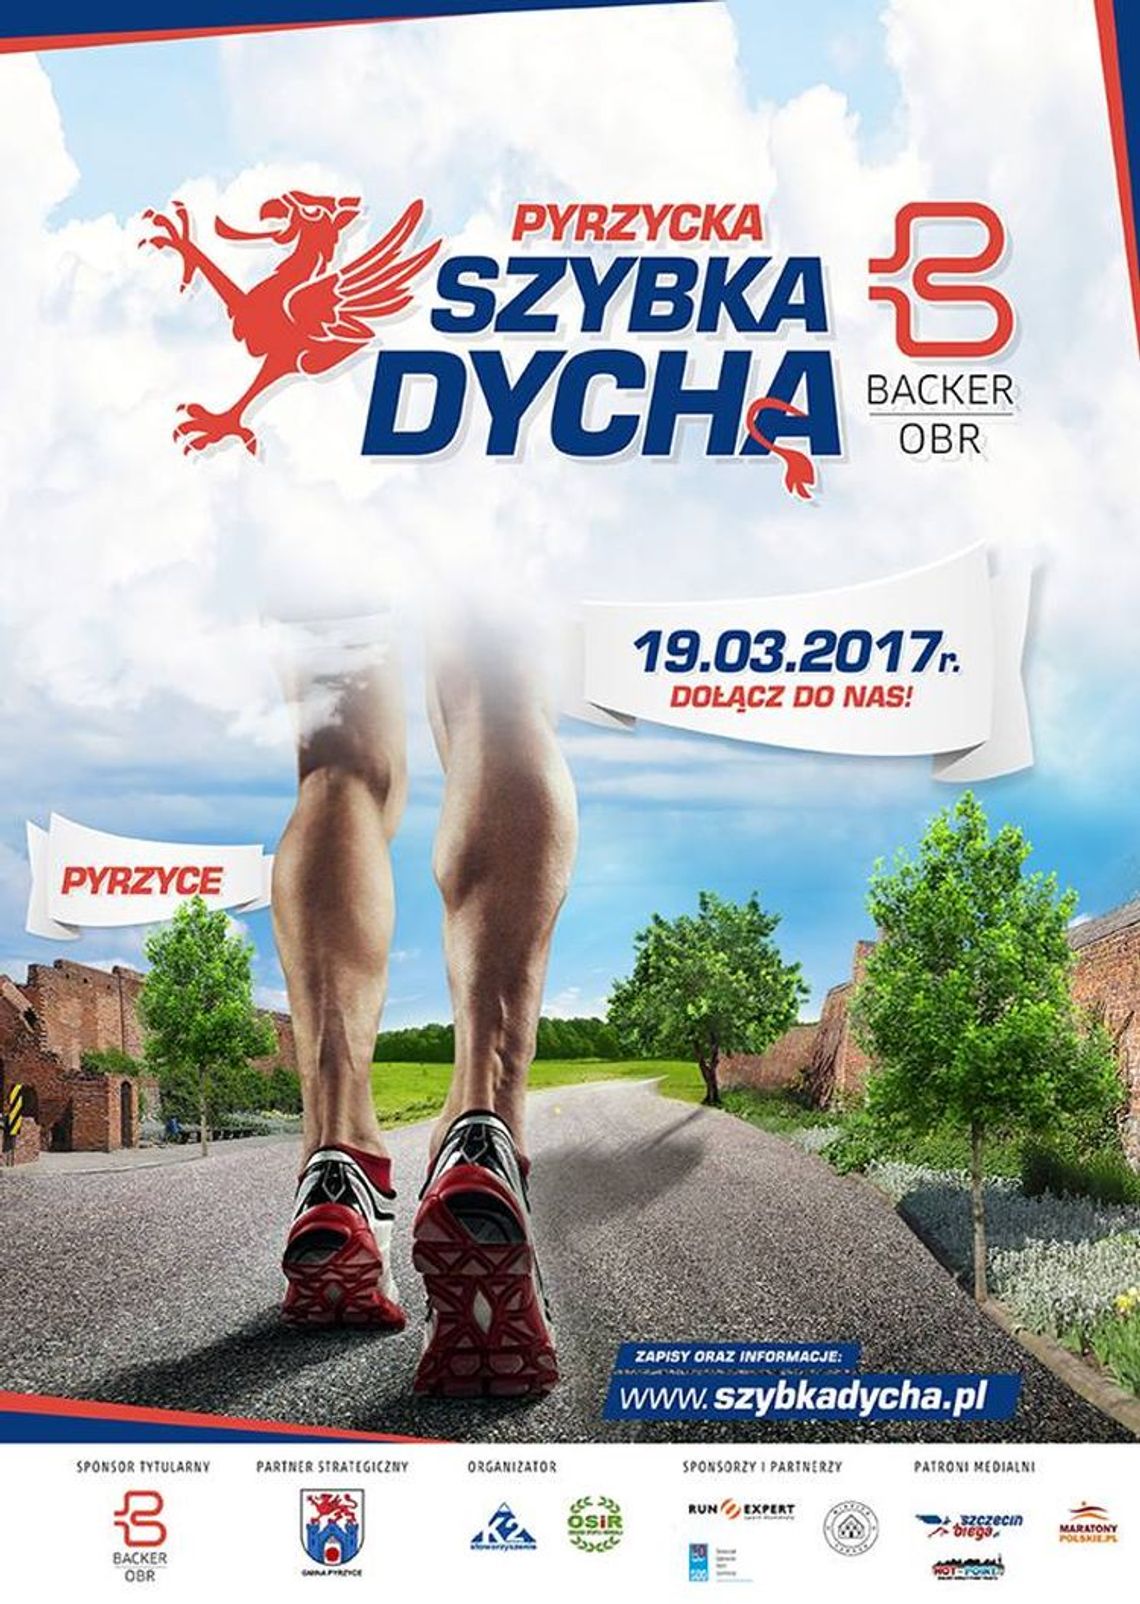 Szybka Dycha Backer OBR - zaproszenie na bieg